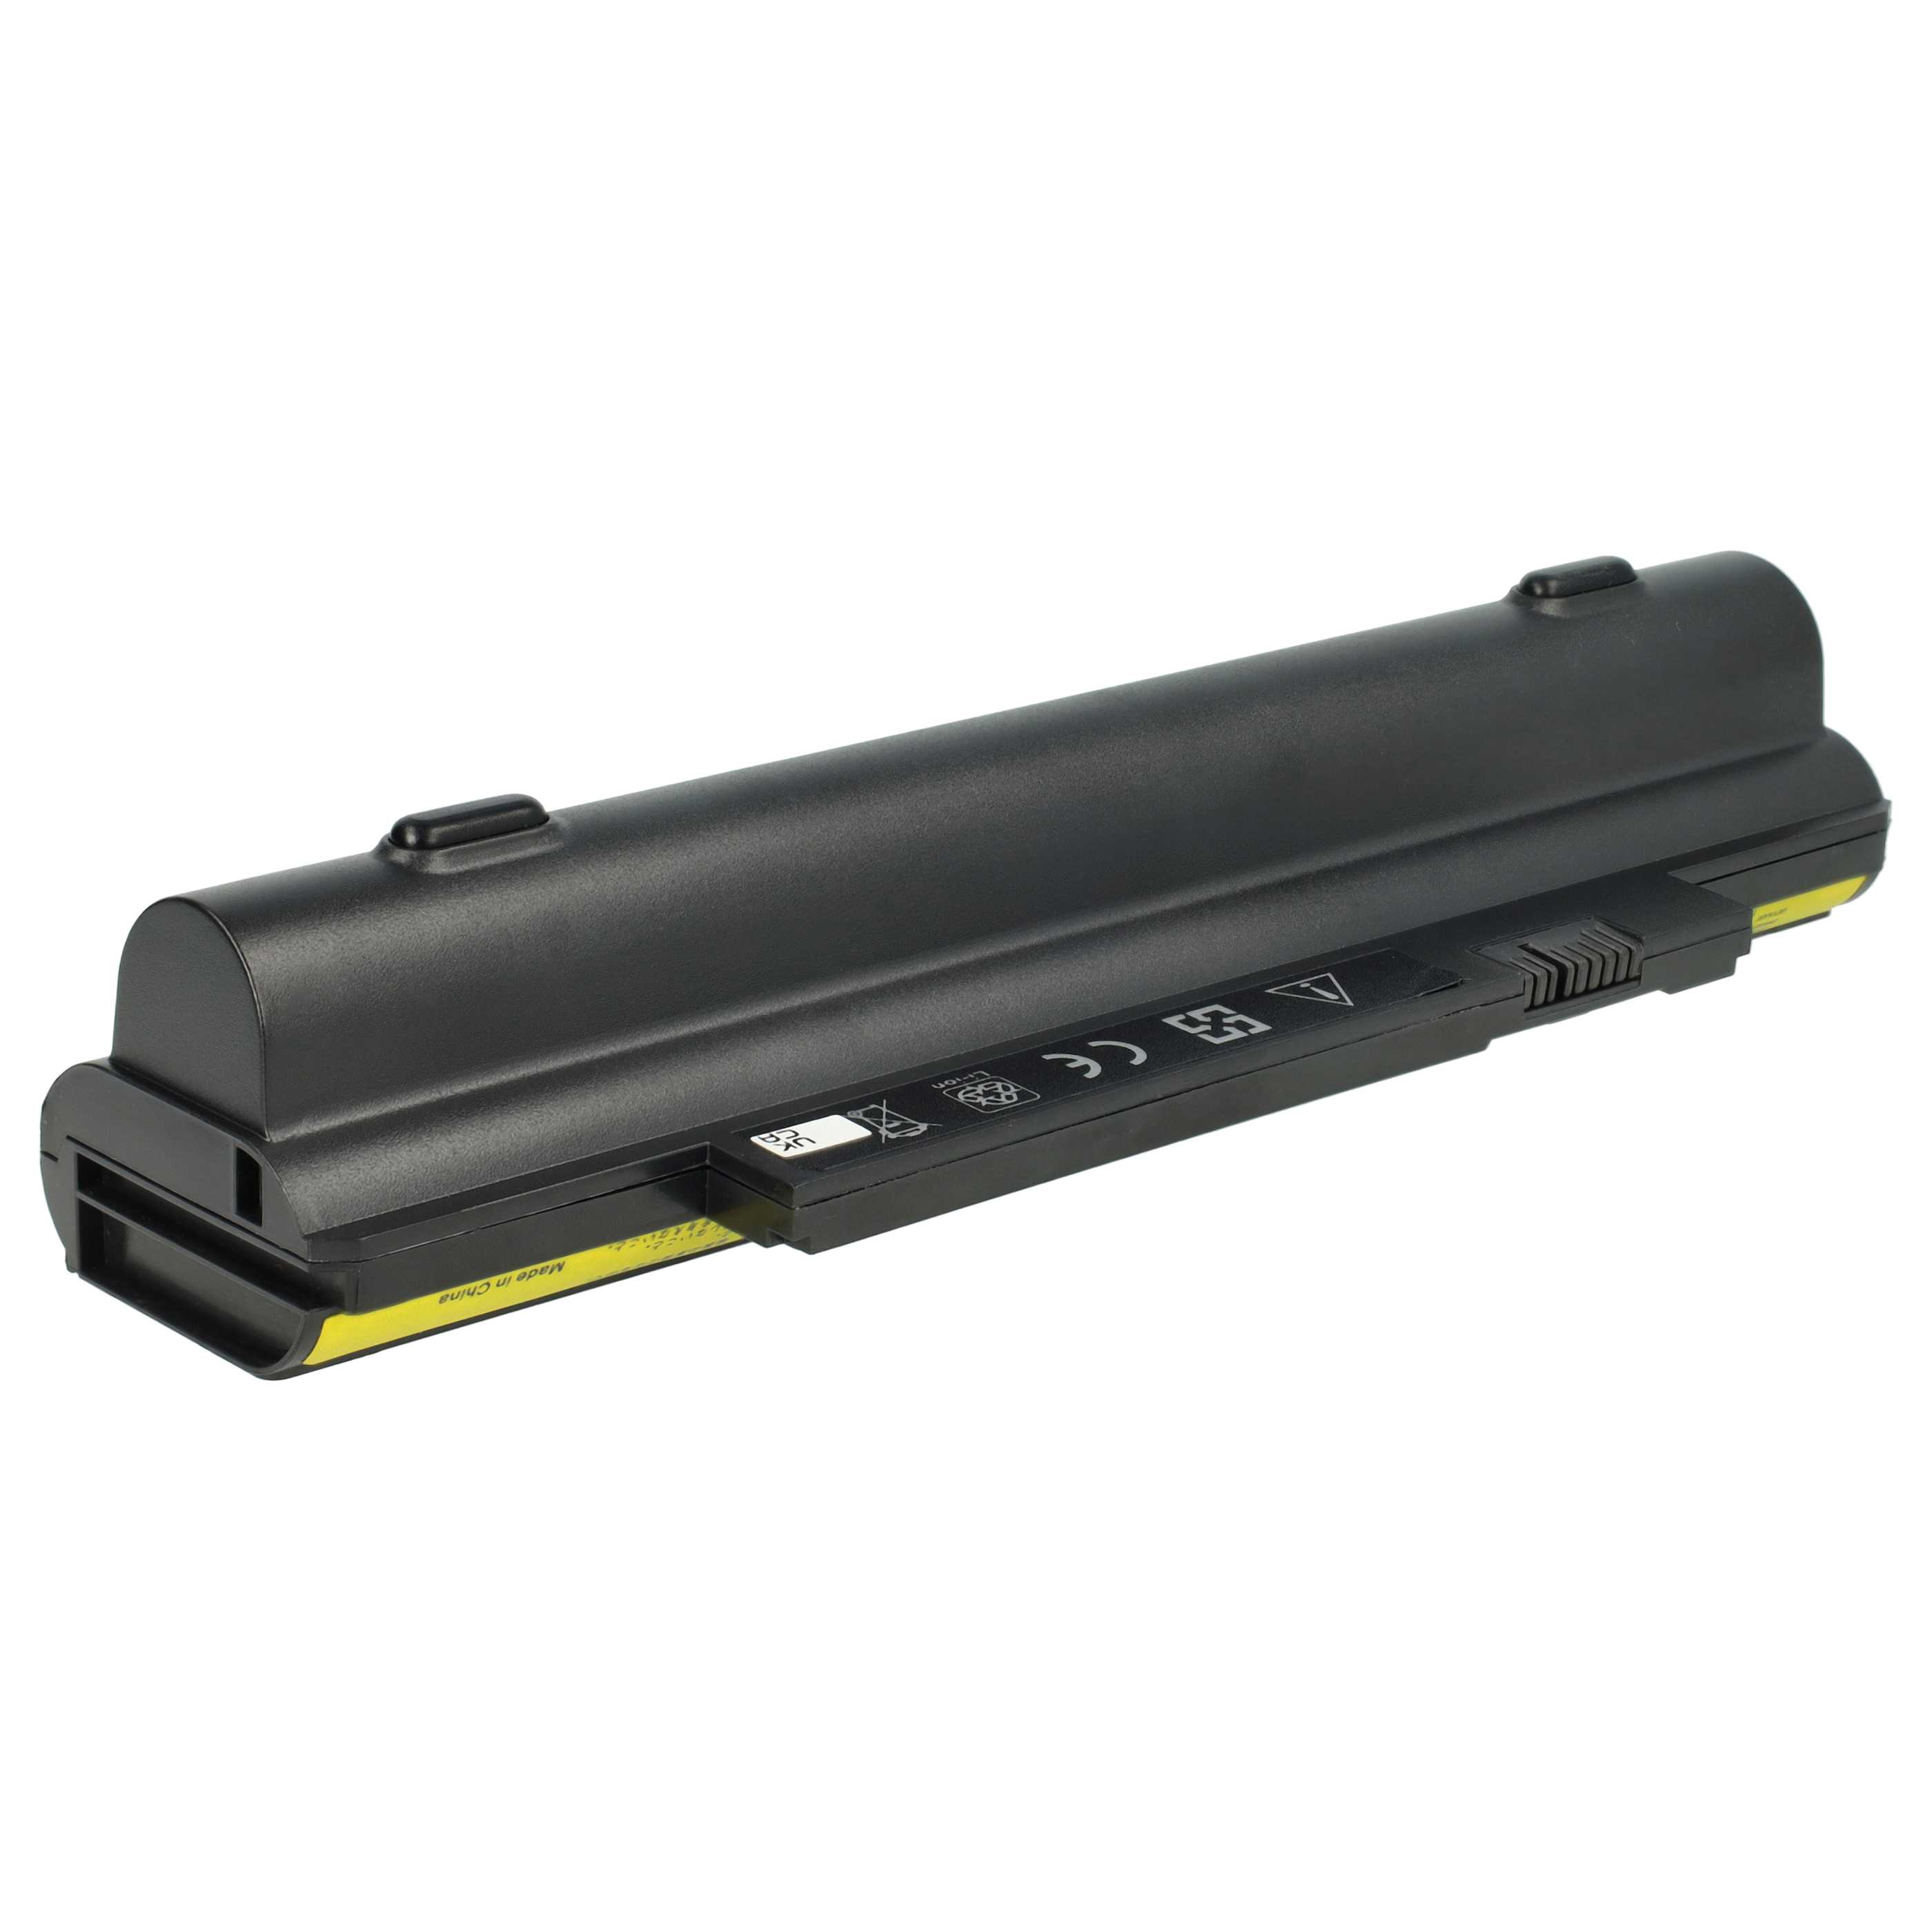 Batterie remplace Lenovo 42T4943, 0A36292, 0A36290 pour ordinateur portable - 6600mAh 11,1V Li-ion, noir